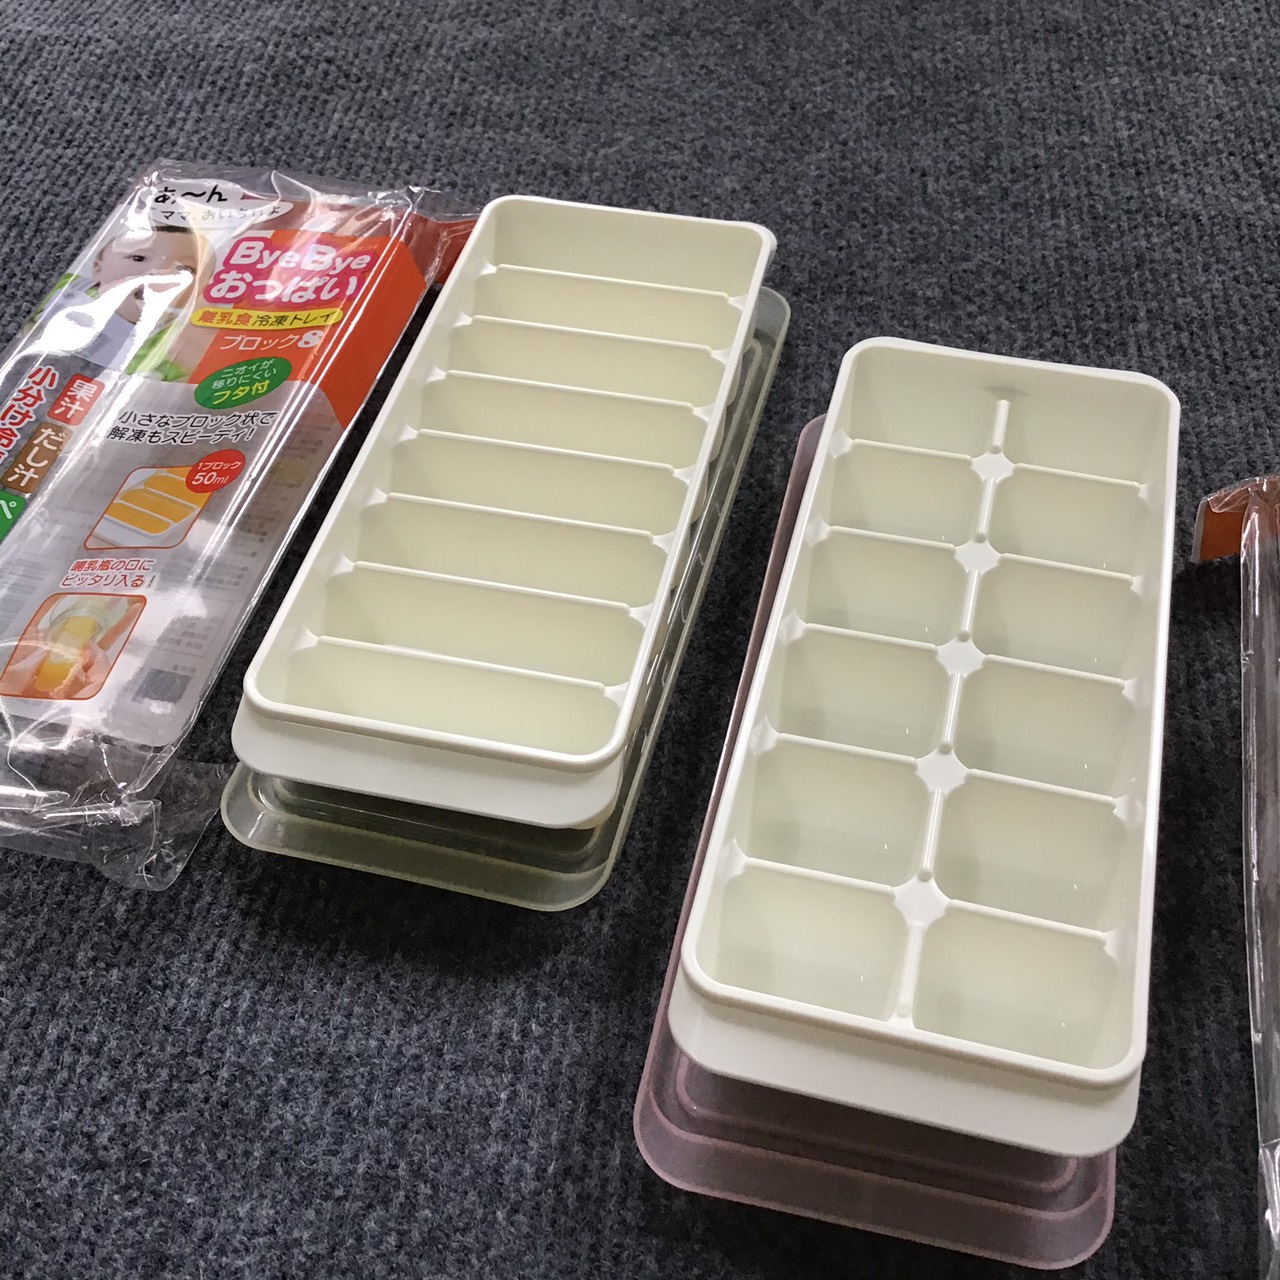 Combo 2 khay đựng đồ ăn dặm 8 ngăn và 12 ngăn Kokubo nhập khẩu từ Nhật Bản